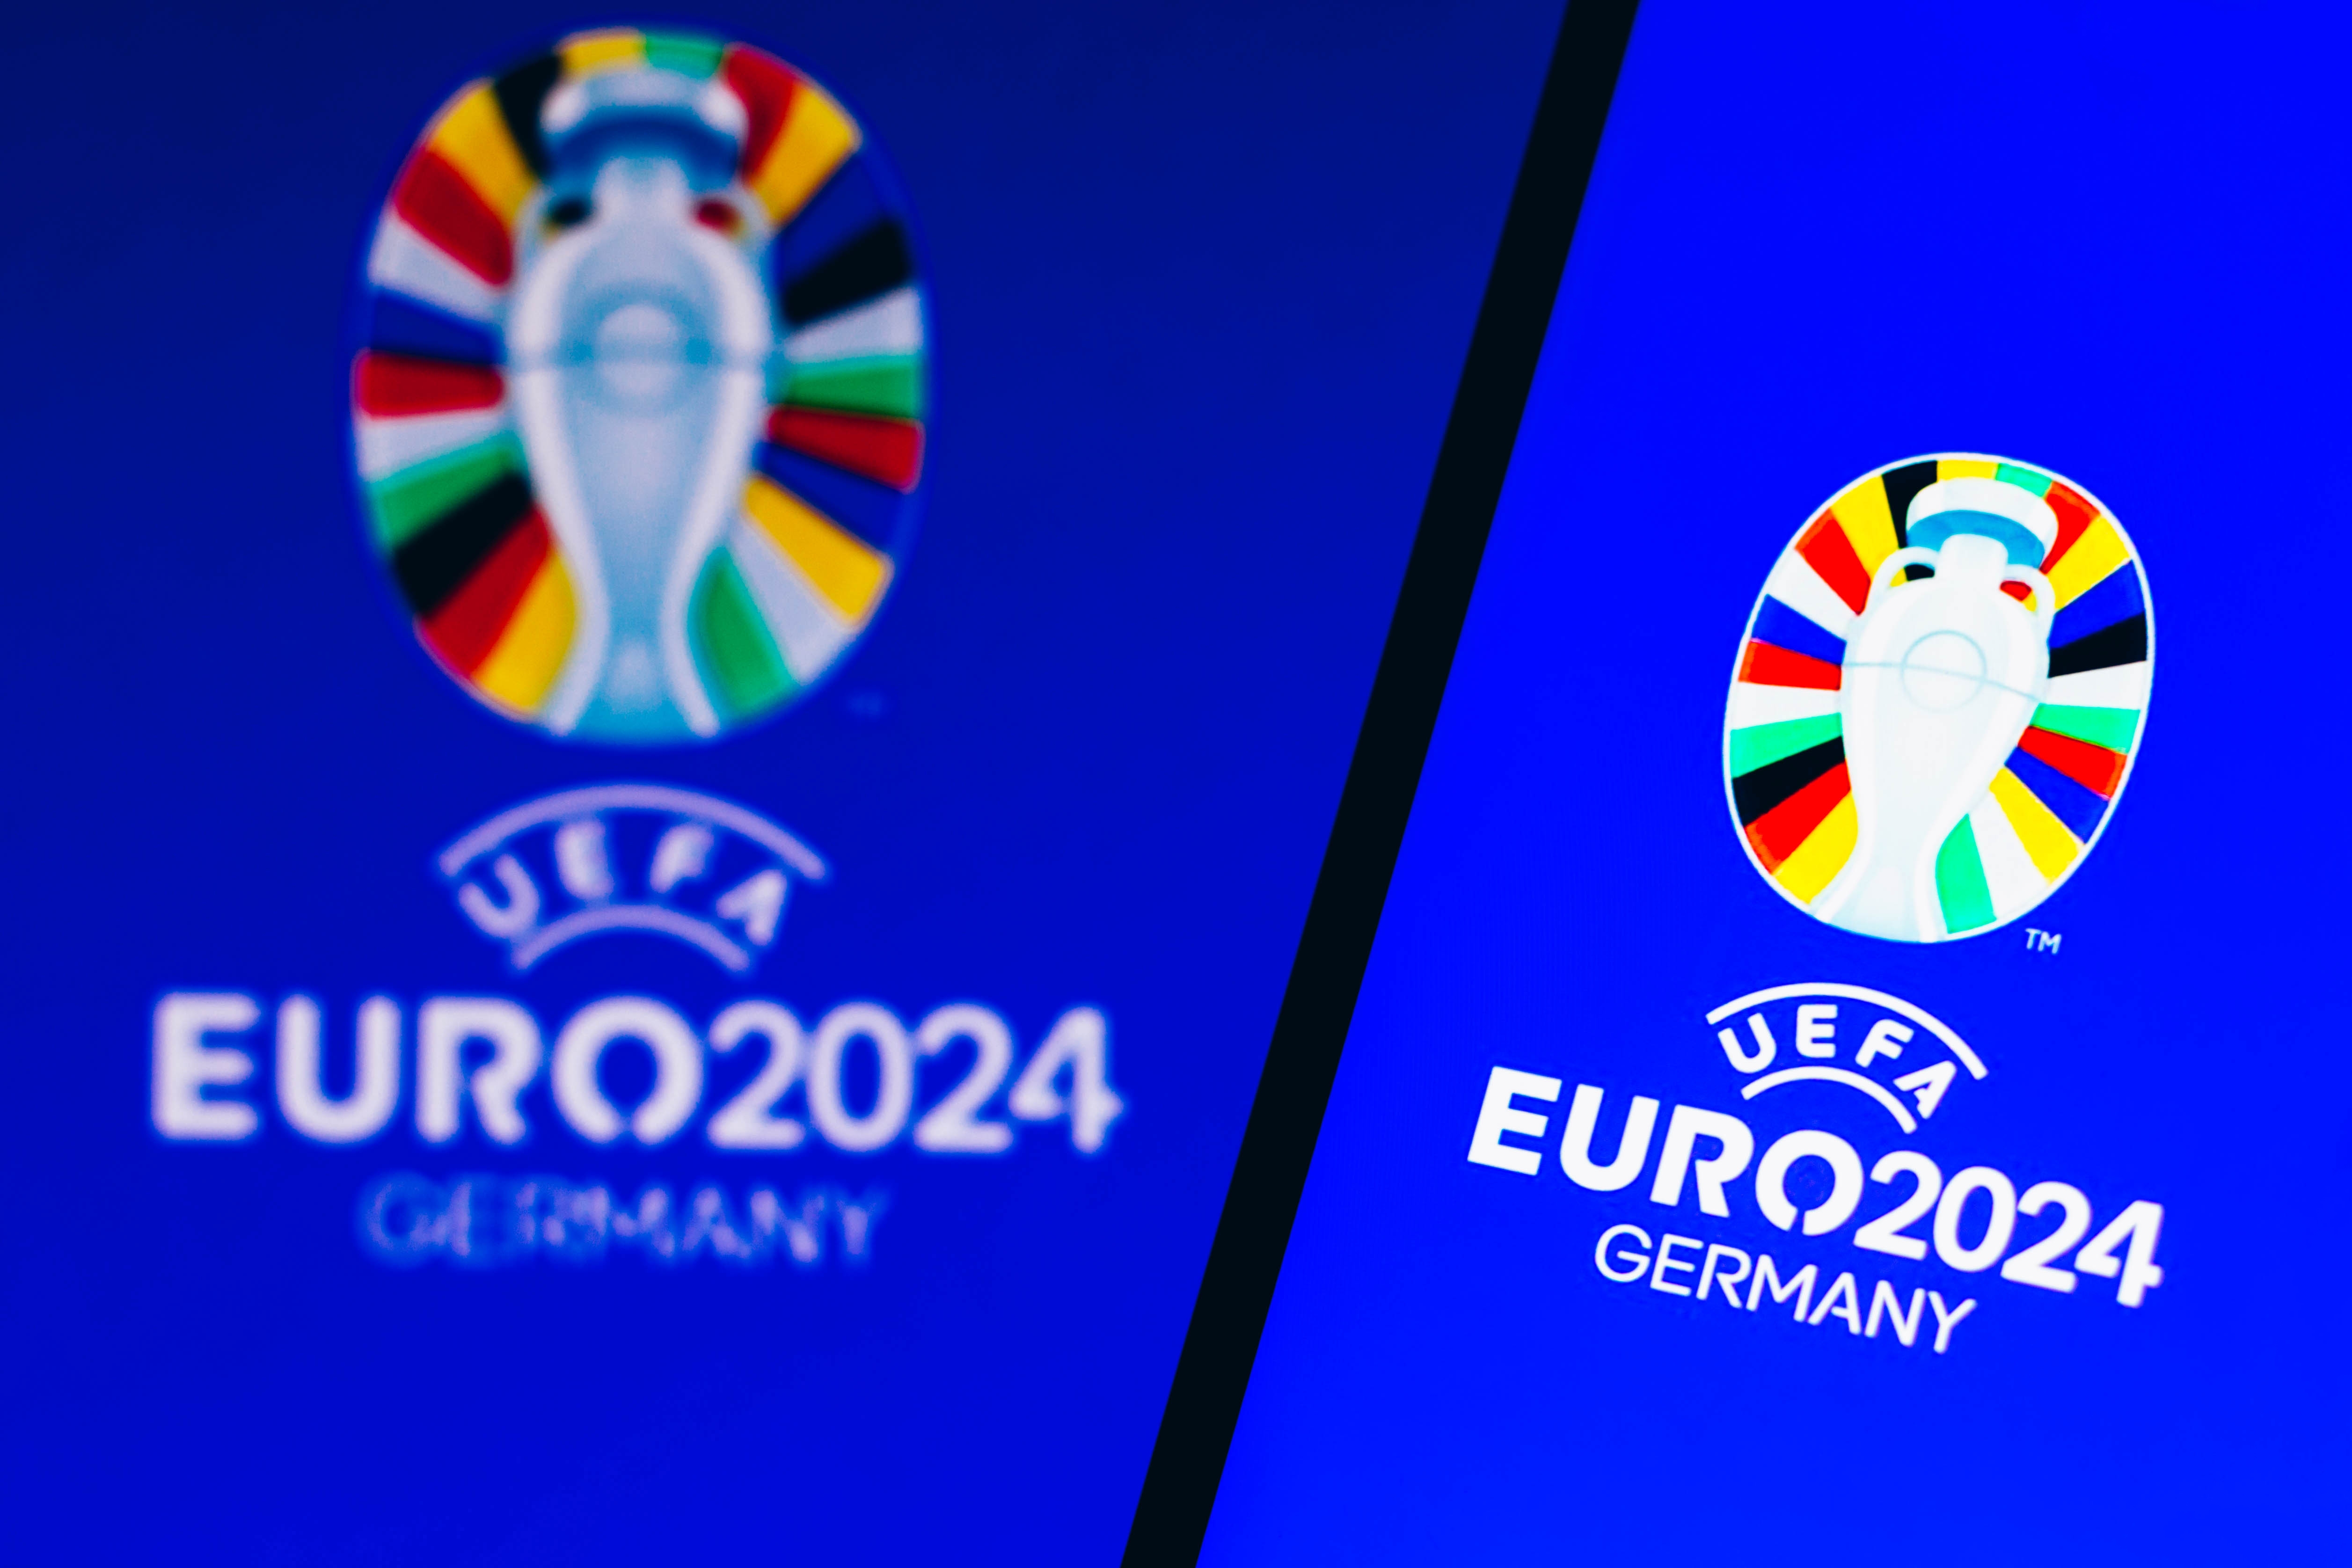 Groupe de travail ad hoc sur l’UEFA EURO 2024 – Allemagne